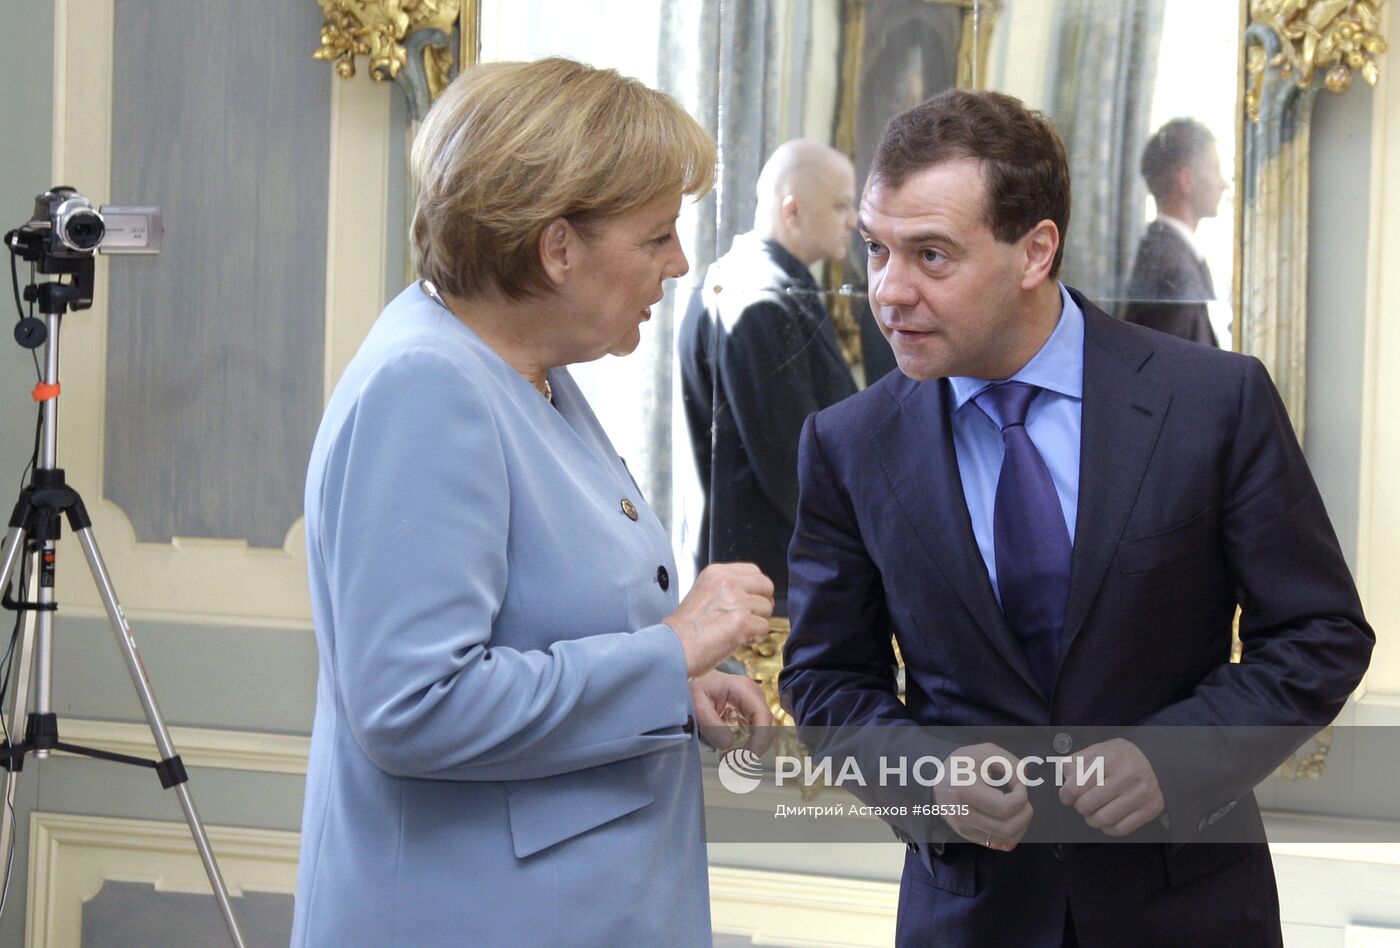 Рабочий визит Дмитрия Медведева в Германию. День второй